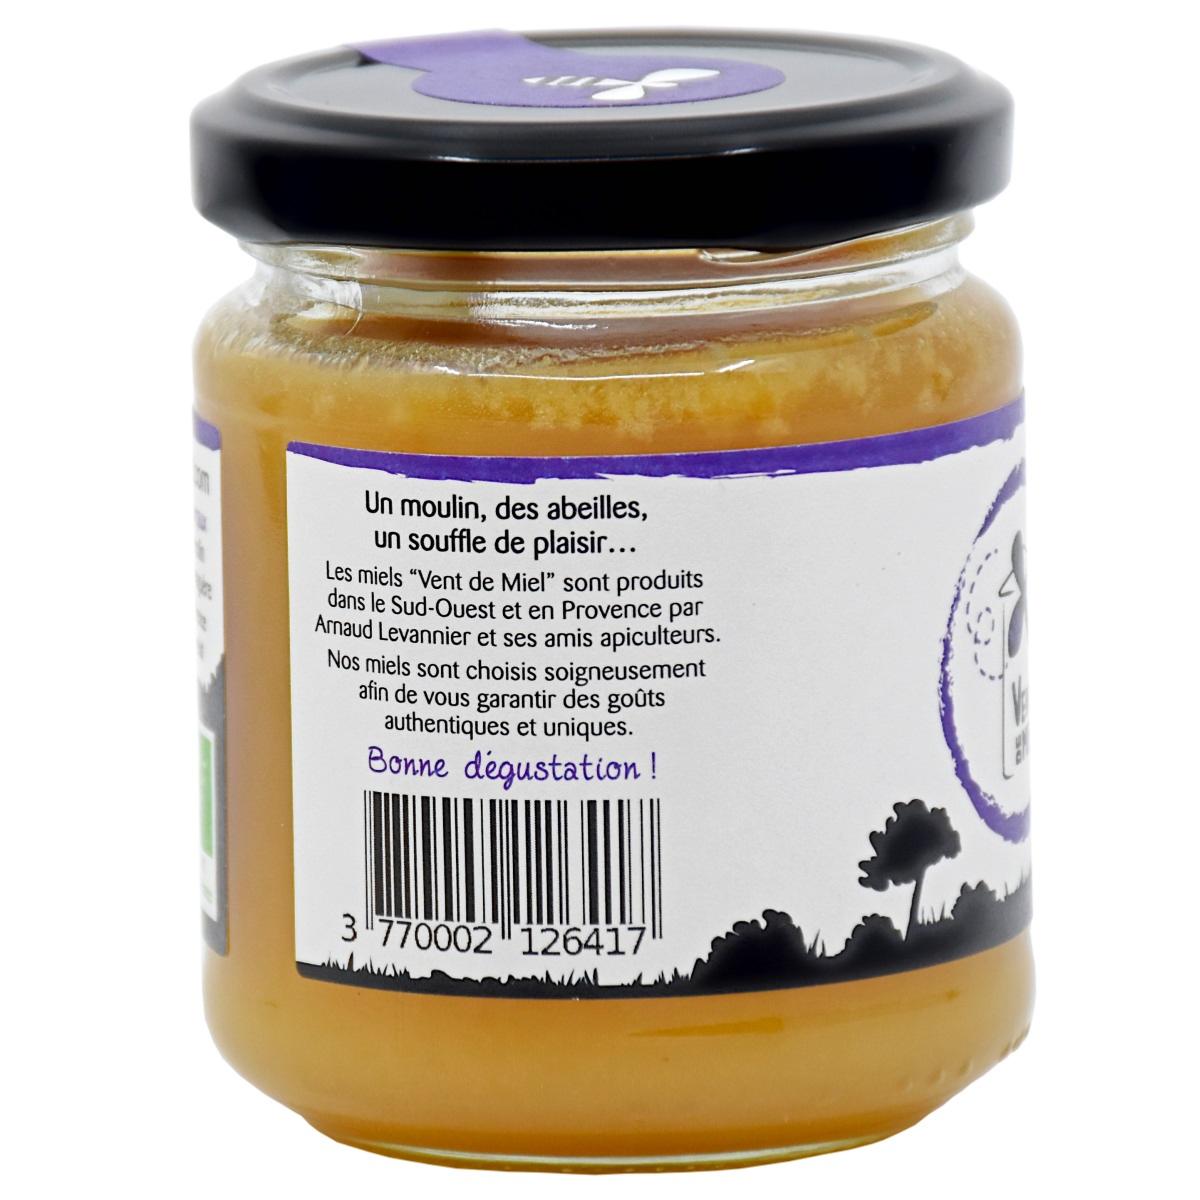 Les meilleurs miel de lavande bio - Musée de l'abeille